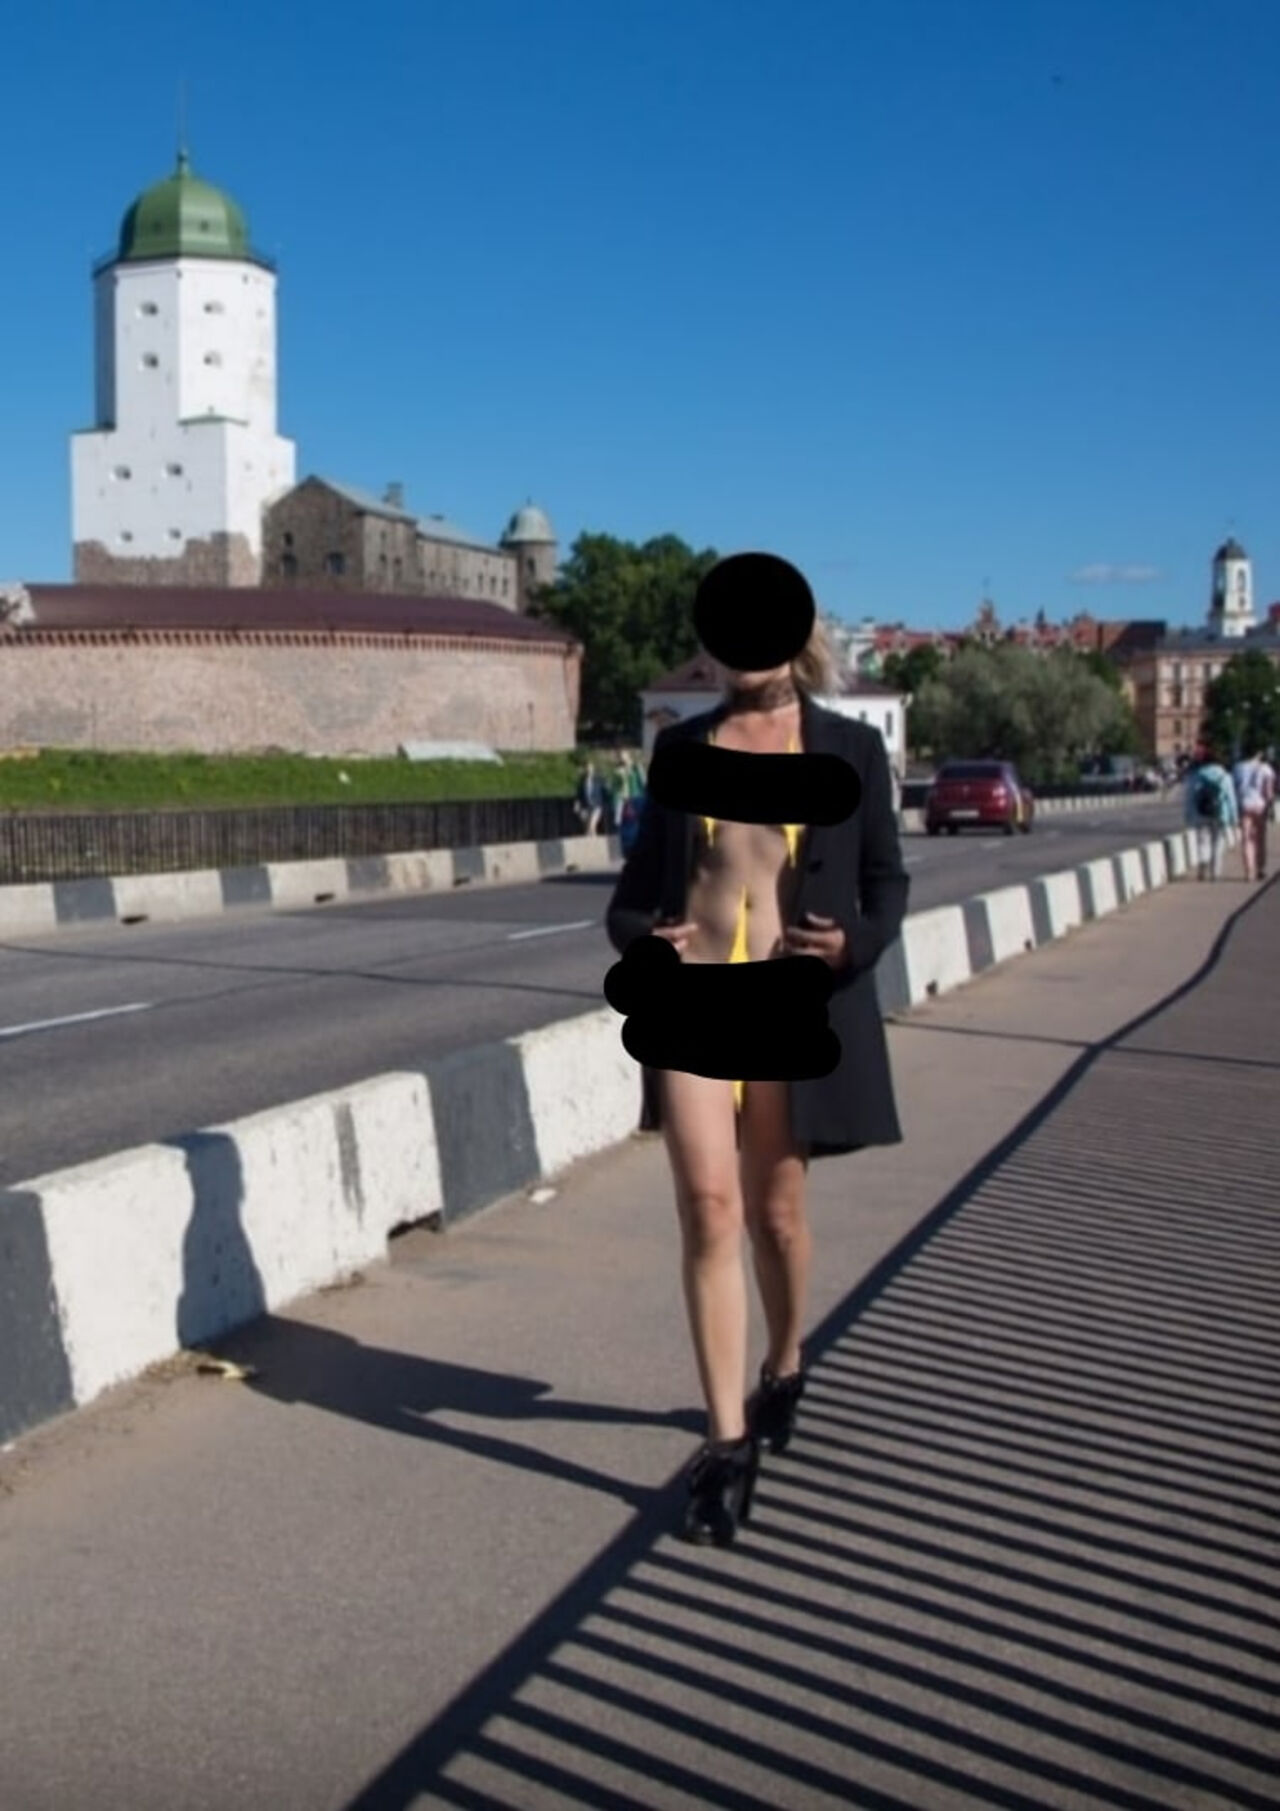 Голые женщины в городе бугуруслане (66 фото) - порно и фото голых на укатлант.рф